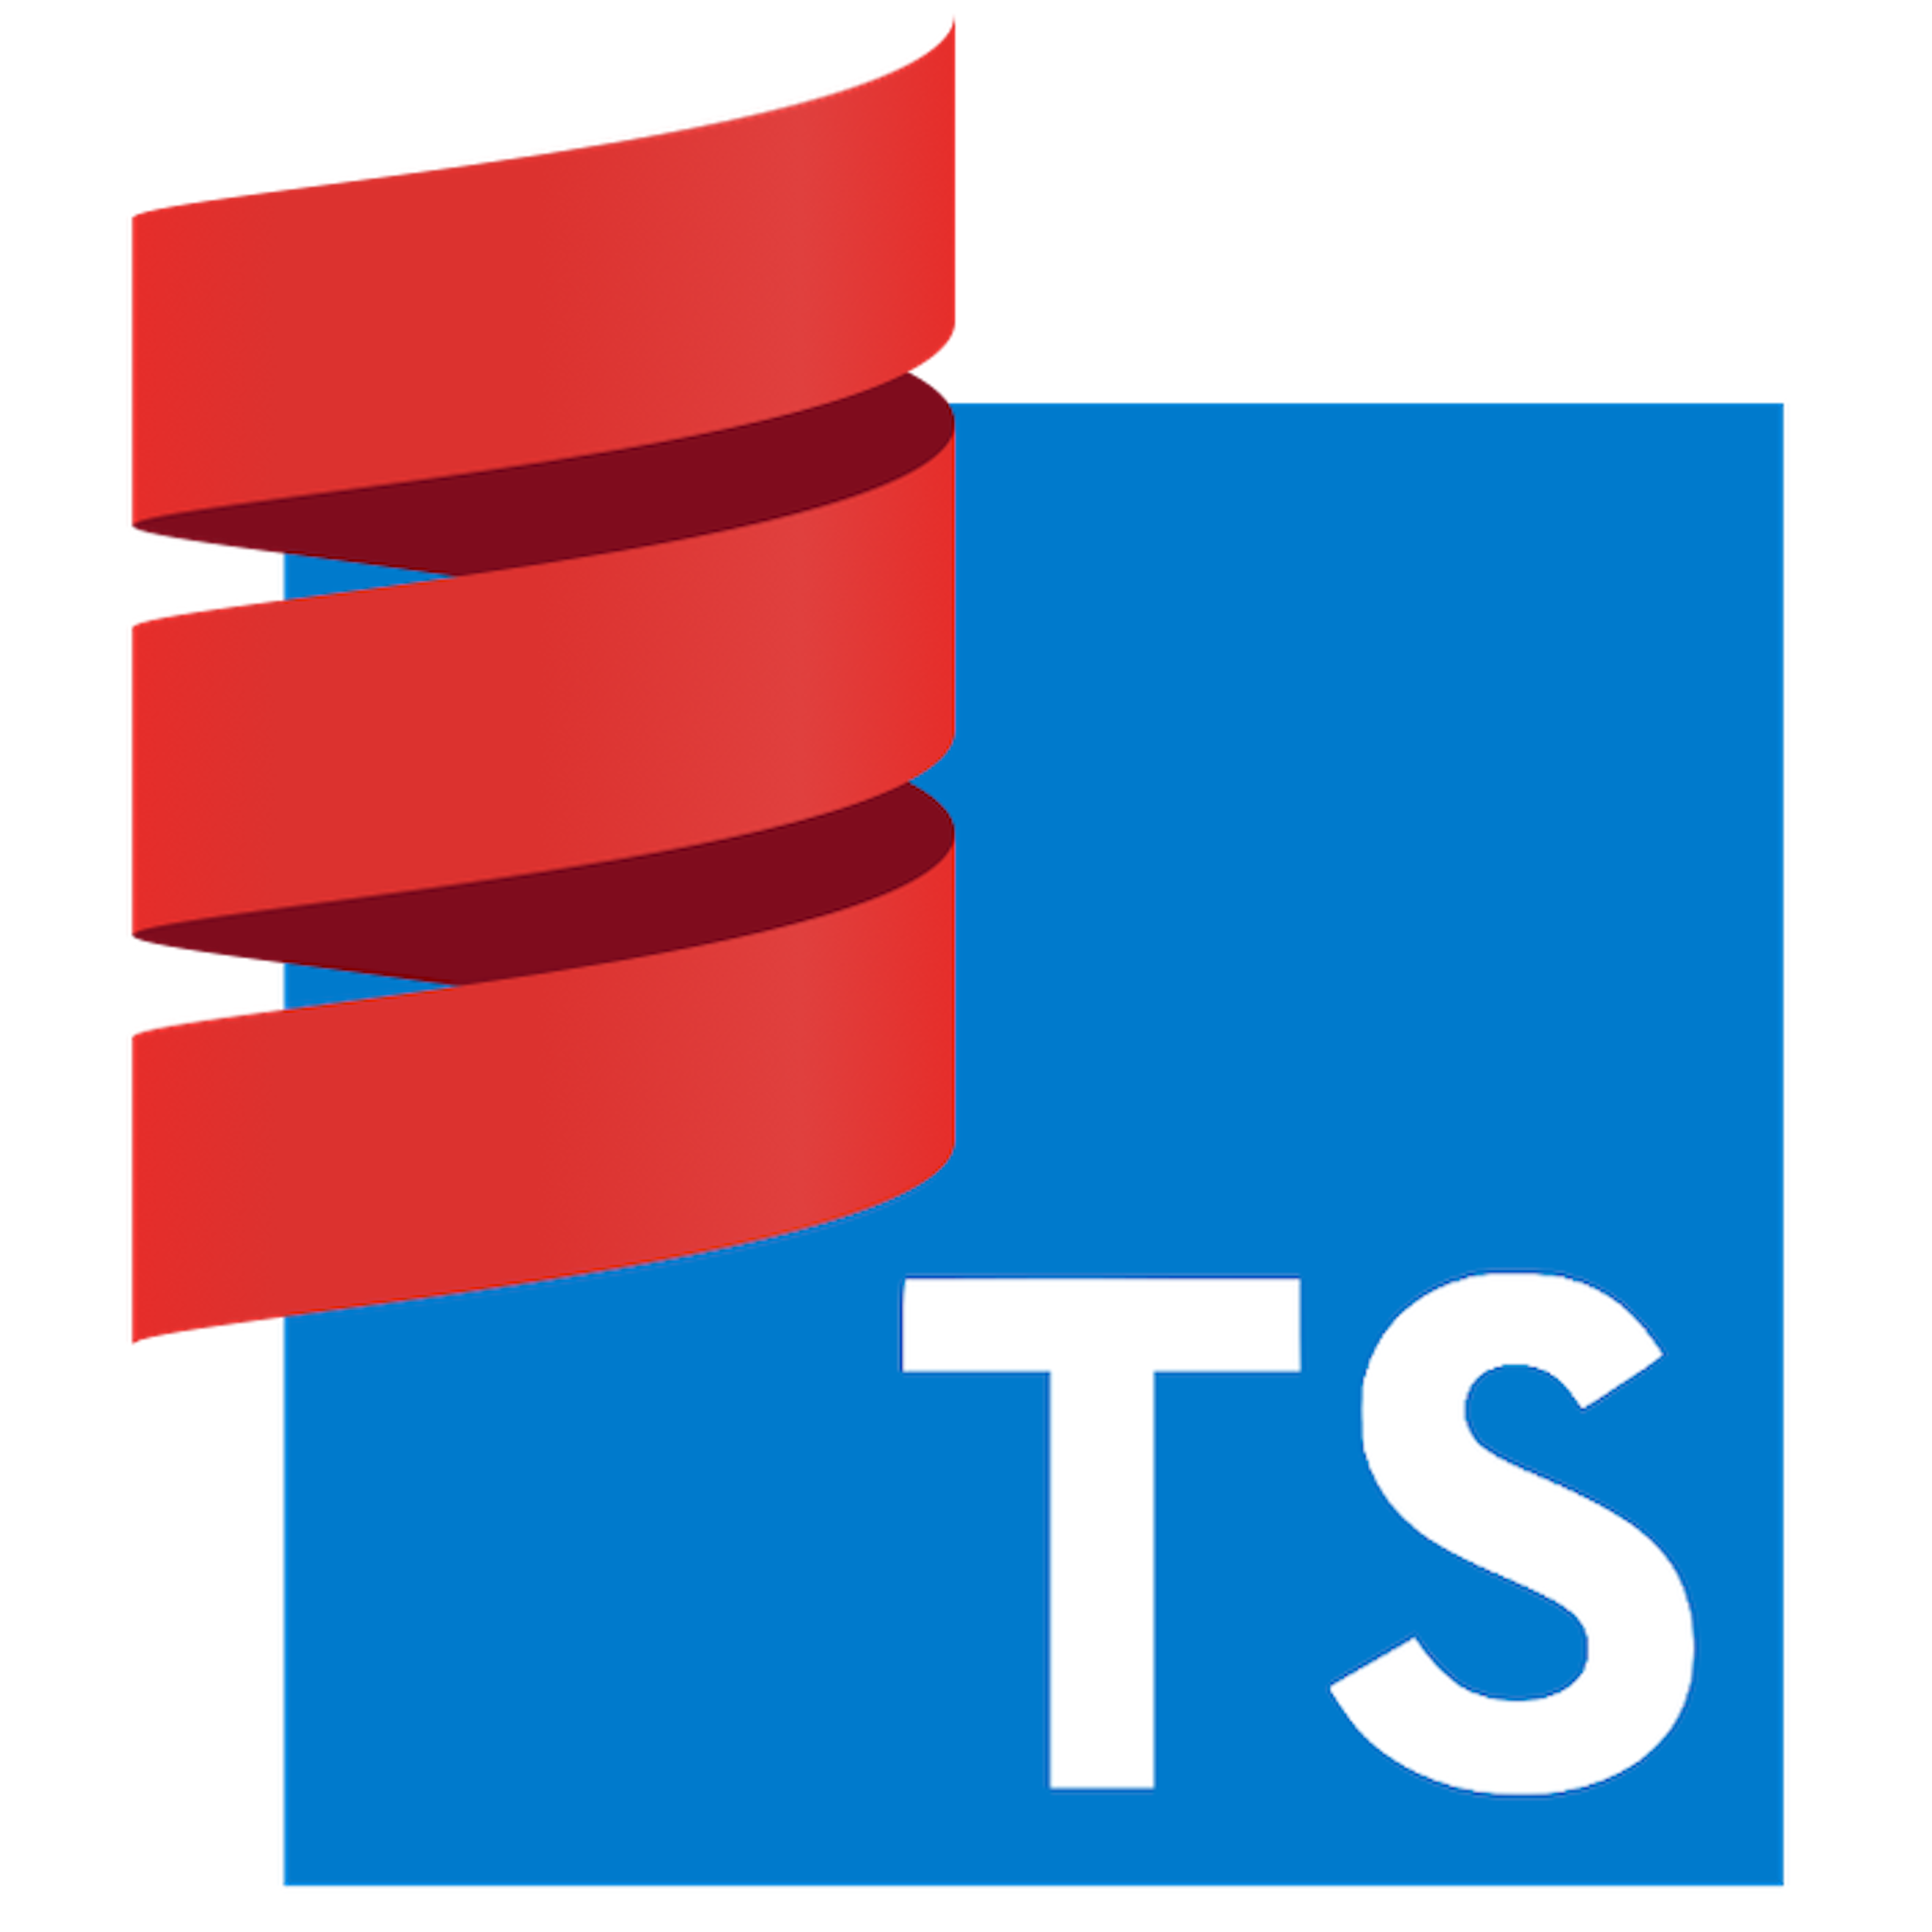 Scala-TS v0.5.0